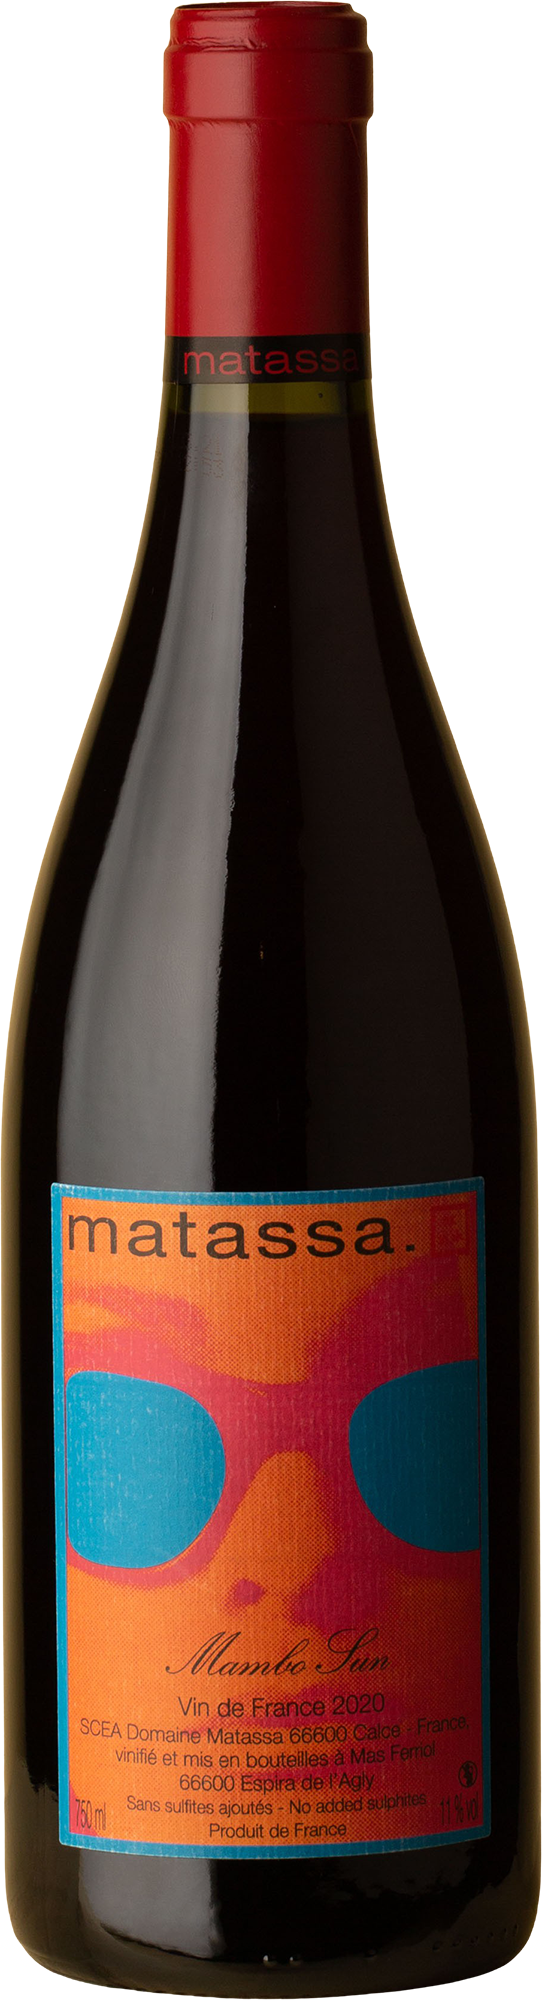 Matassa - Mambo Sun Grenache / Macabeu 2020 Red Wine